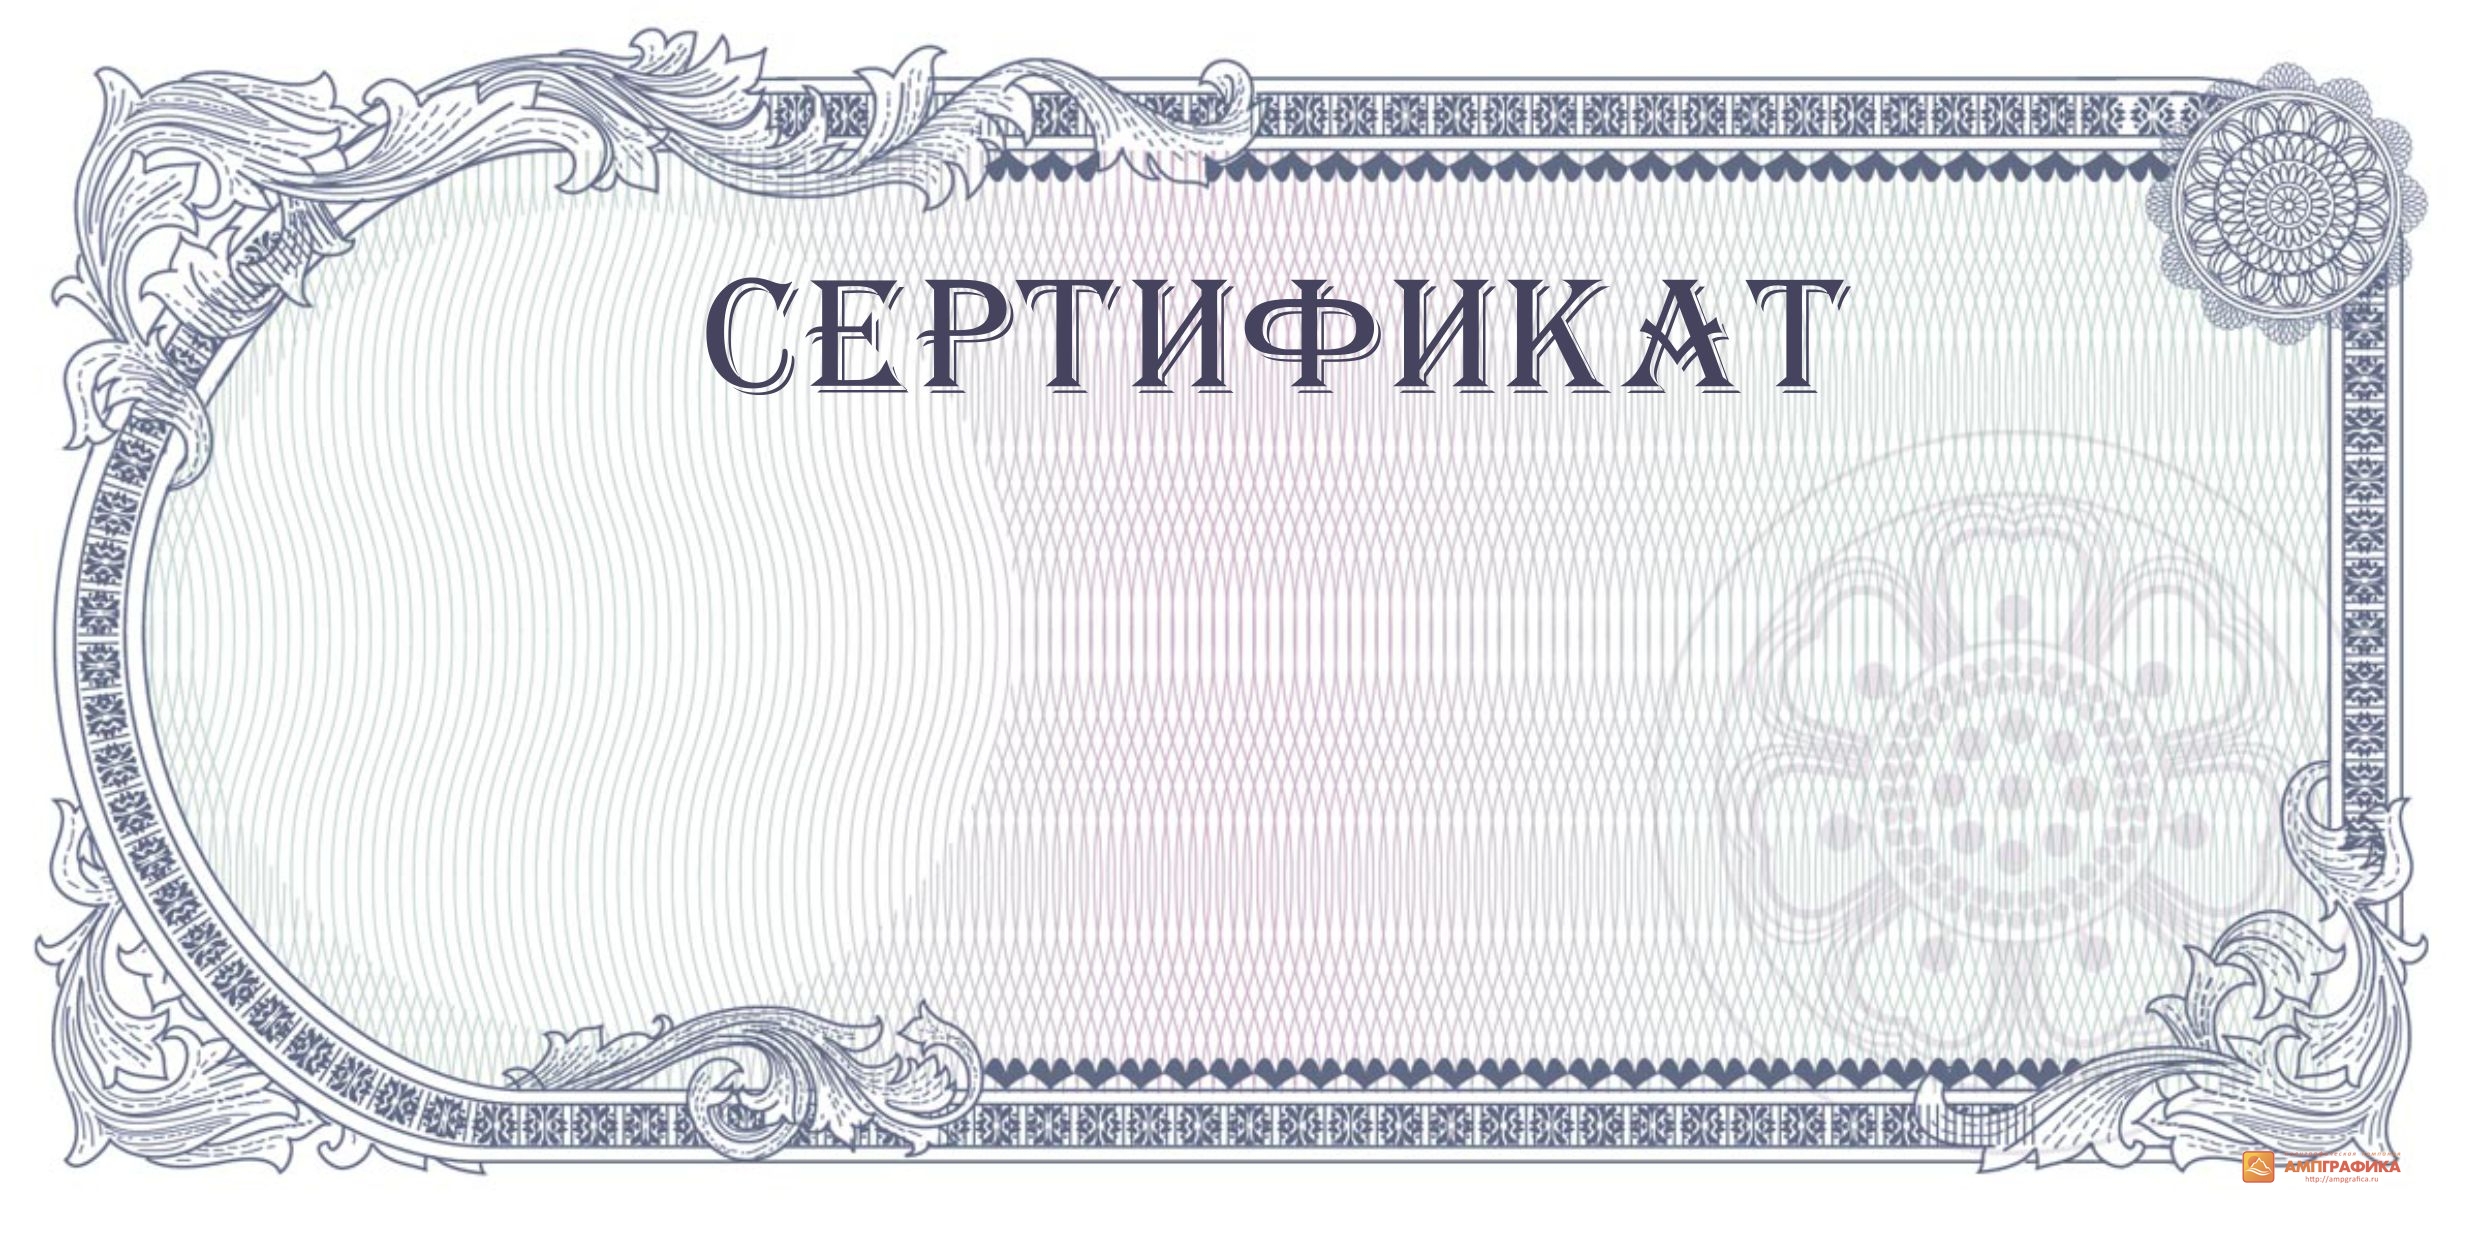 Сертификат красивый бланк